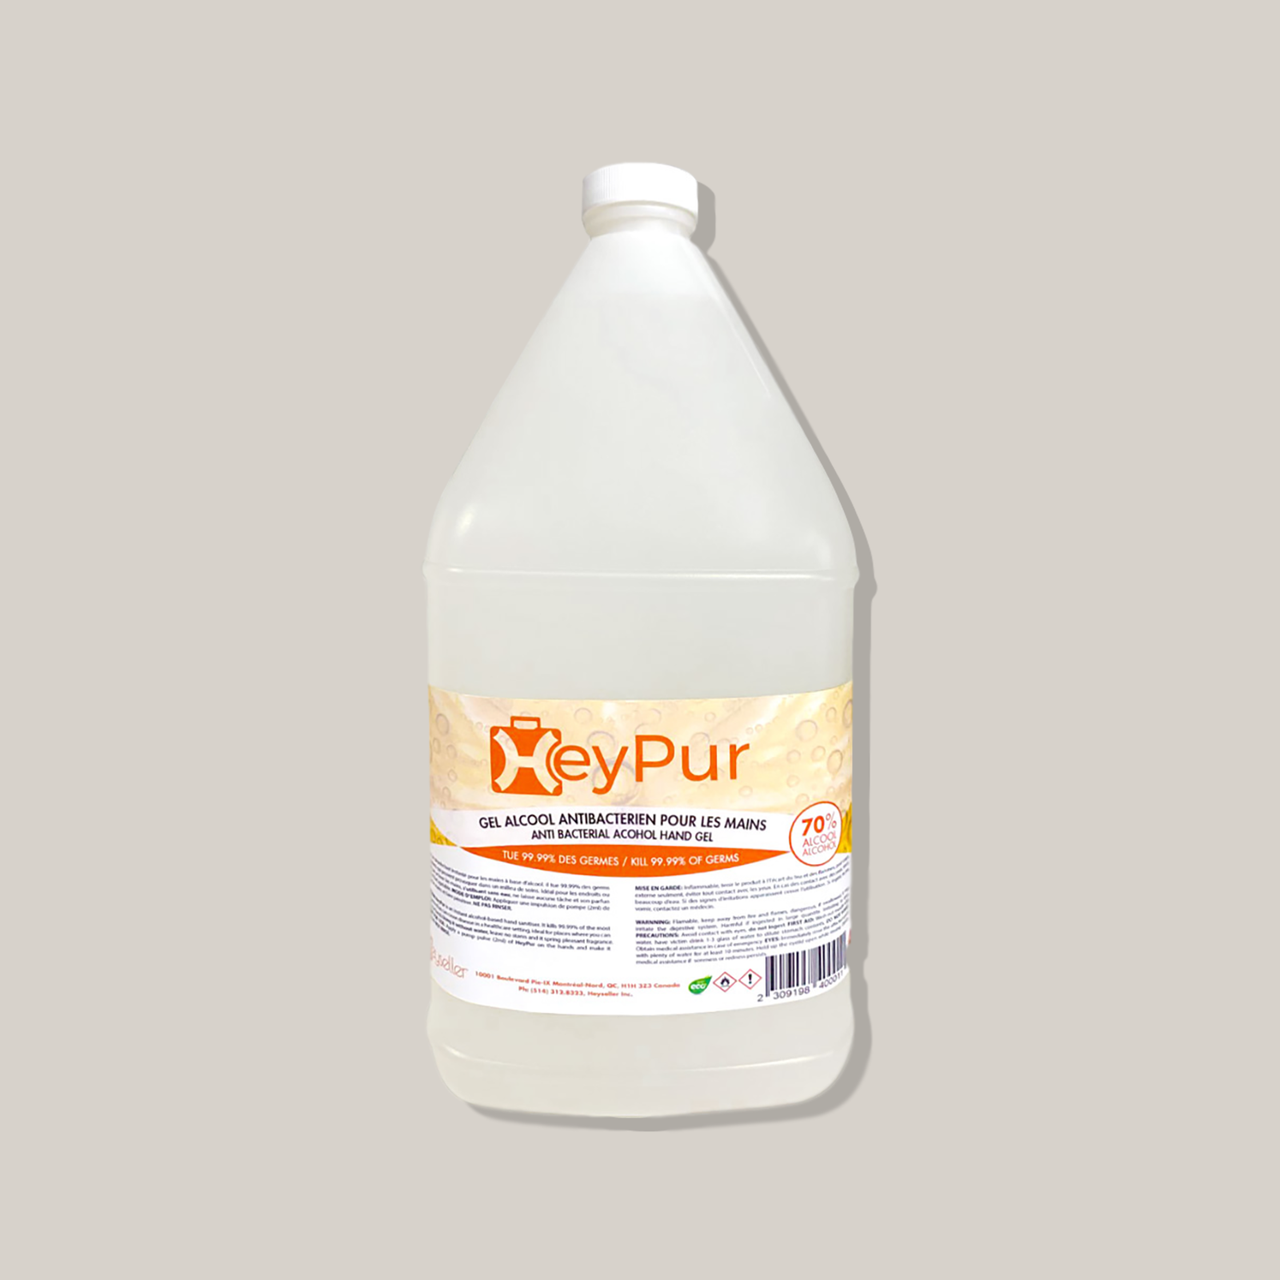 Heypur Alcoholbased antibacterial hand gel 